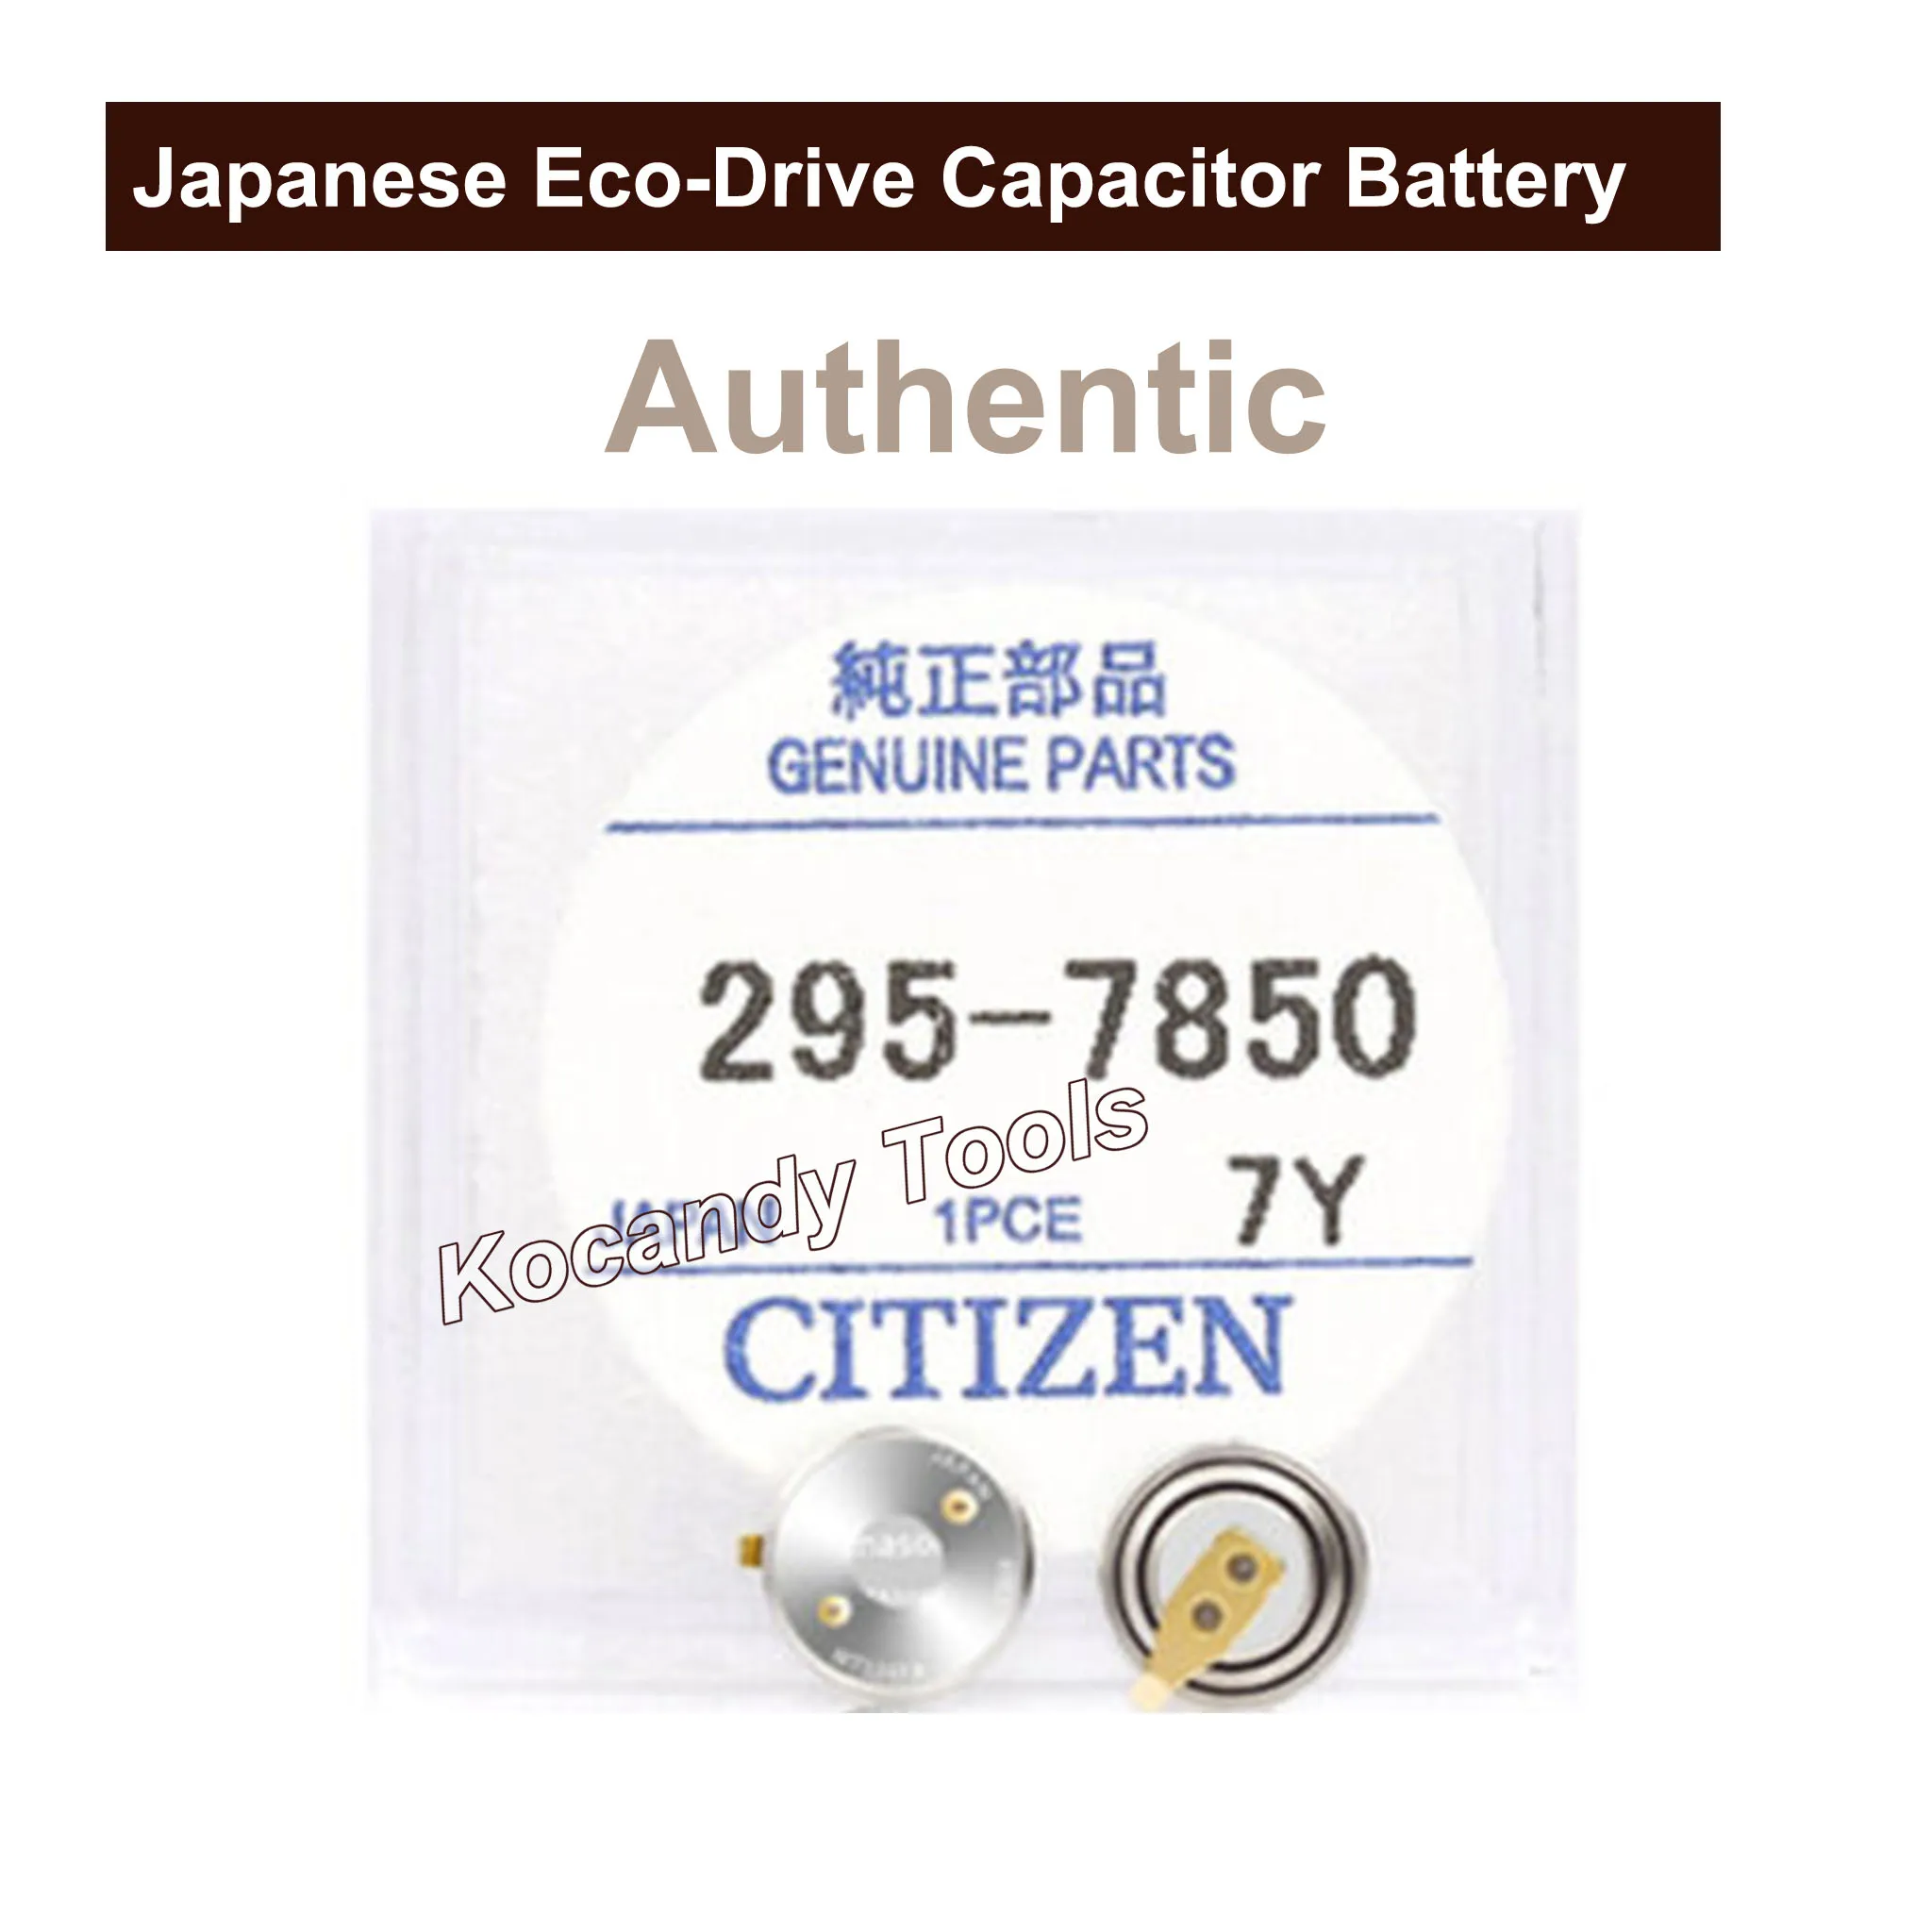 Panasonc-Batería de condensador 295,7850 para reloj, acumulador de batería de reloj para Citzen eco-drive G820M, pieza n. ° 295-7850, MT616